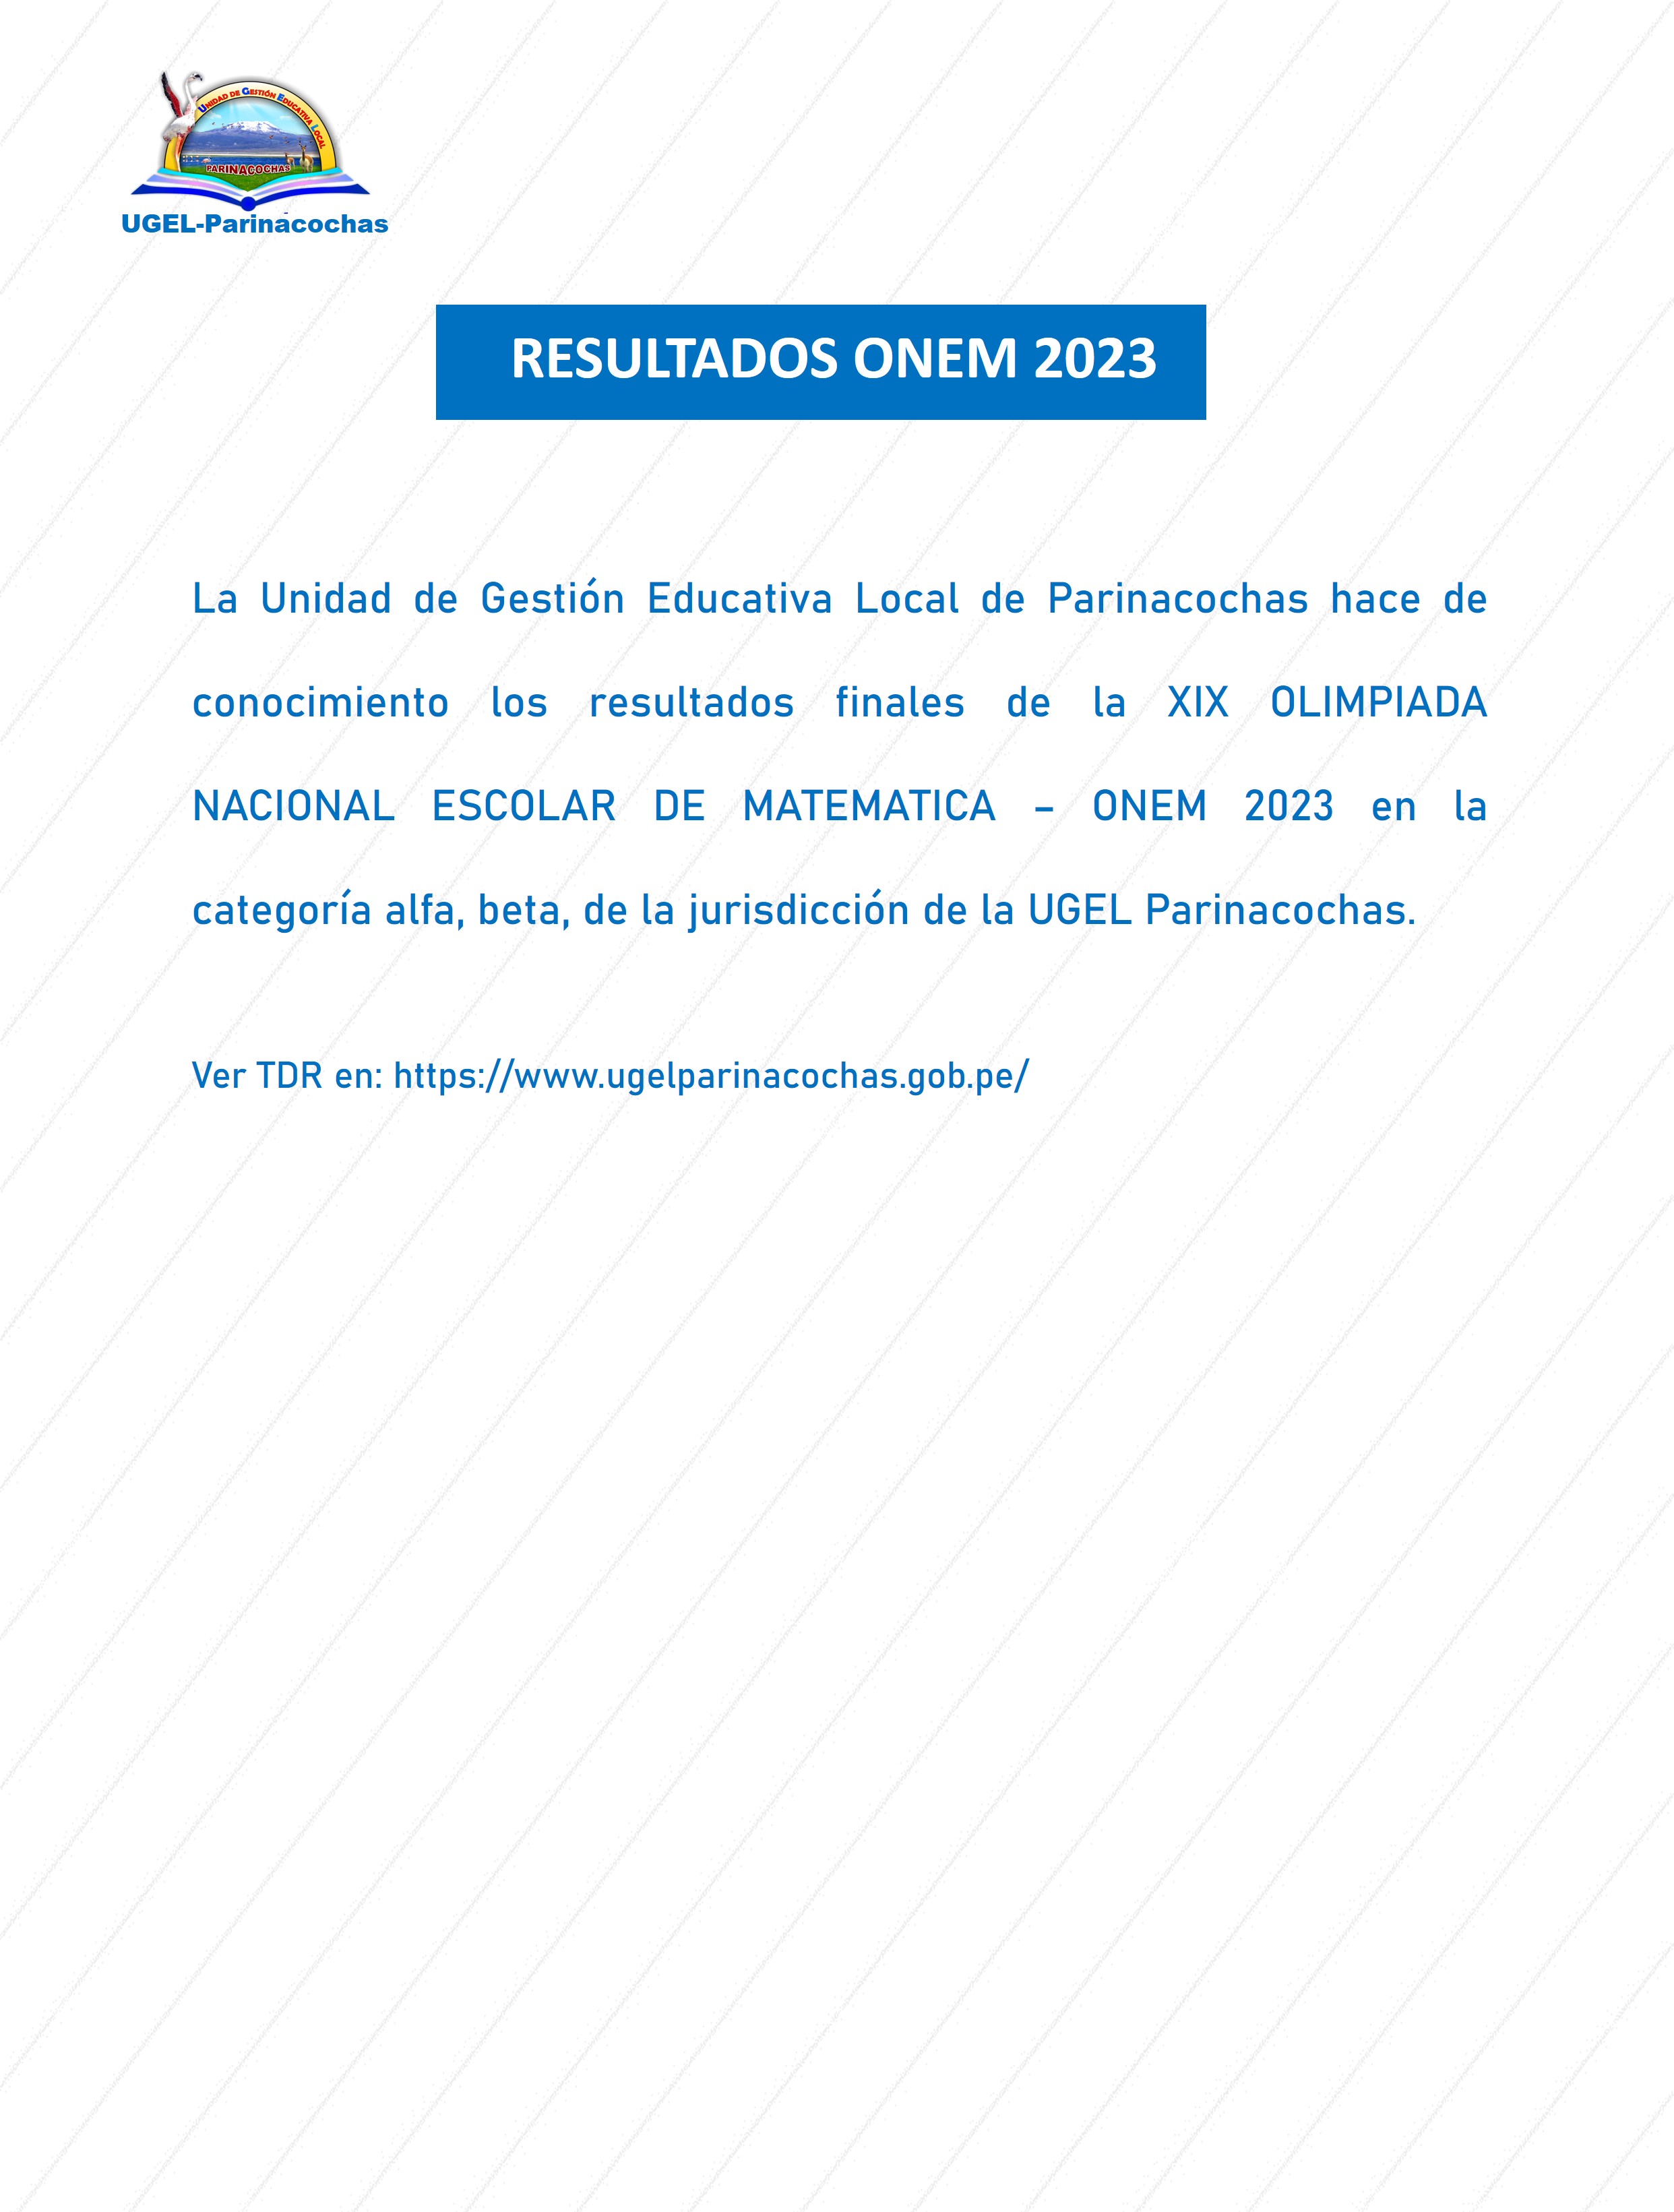 RESULTADOS 2023 ONEM UGEL Parinacochas